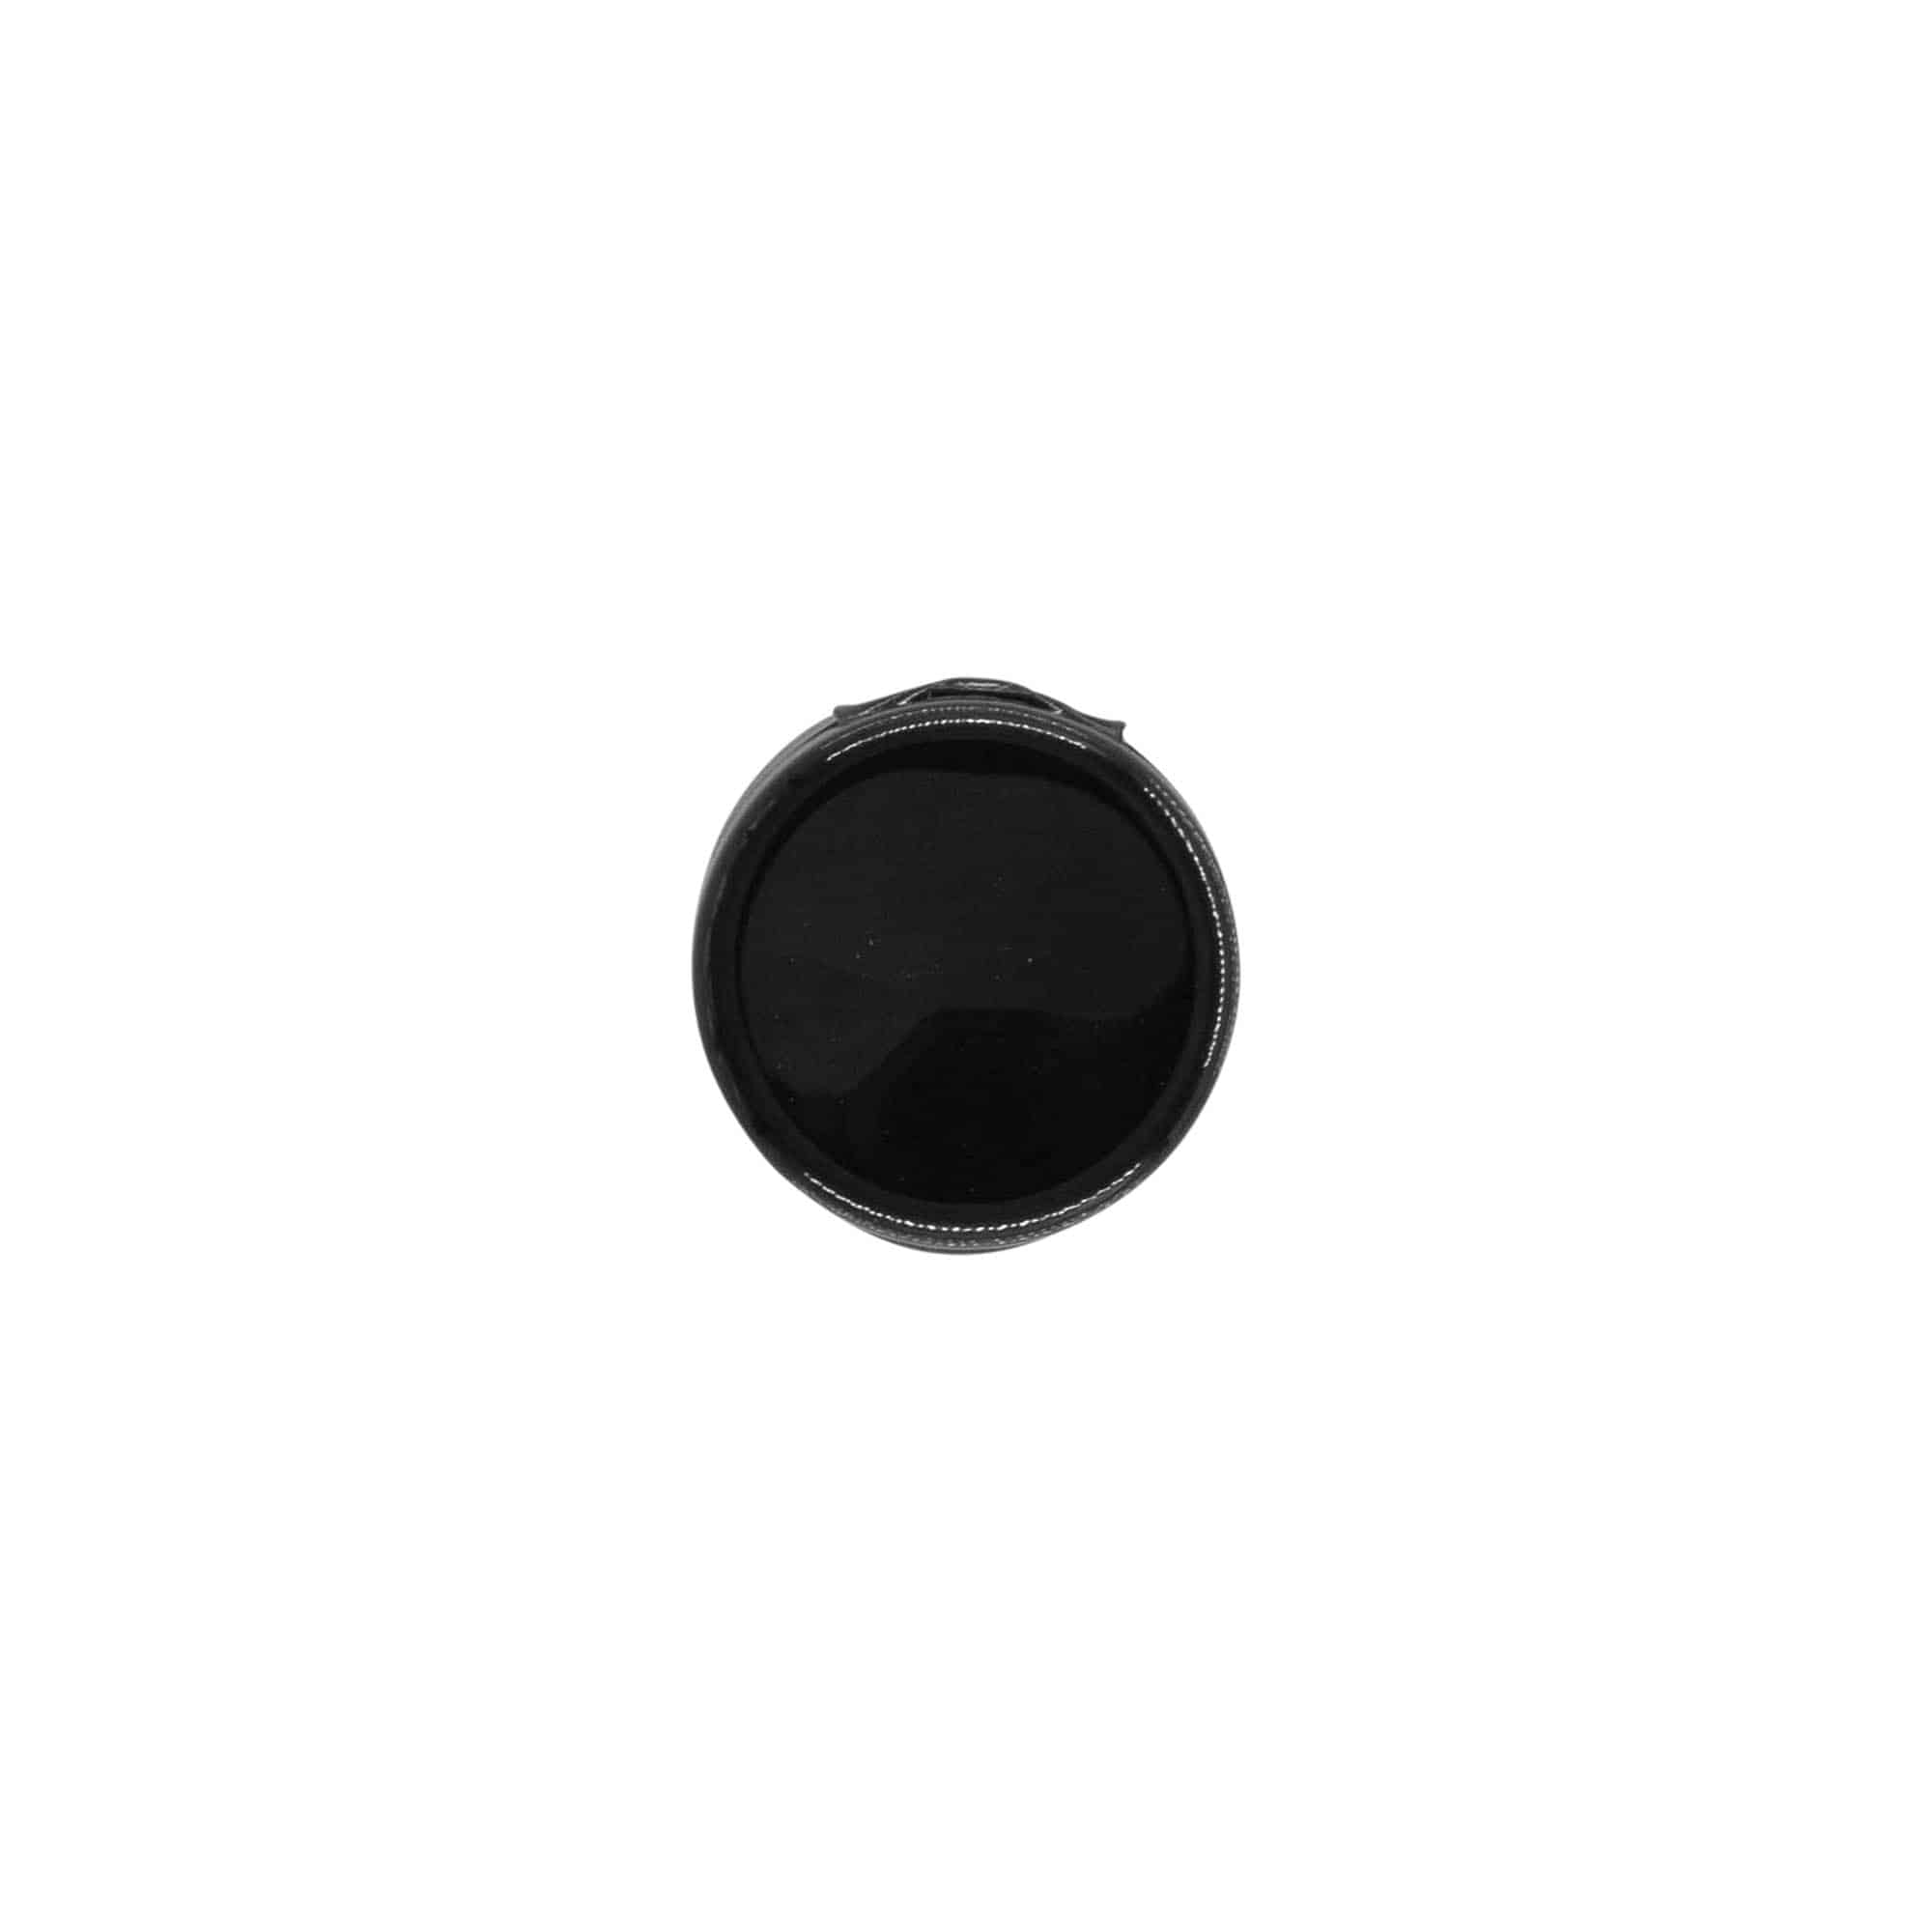 Schraubverschluss Klappscharnier, PP-Kunststoff, schwarz, für Mündung: GPI 20/410